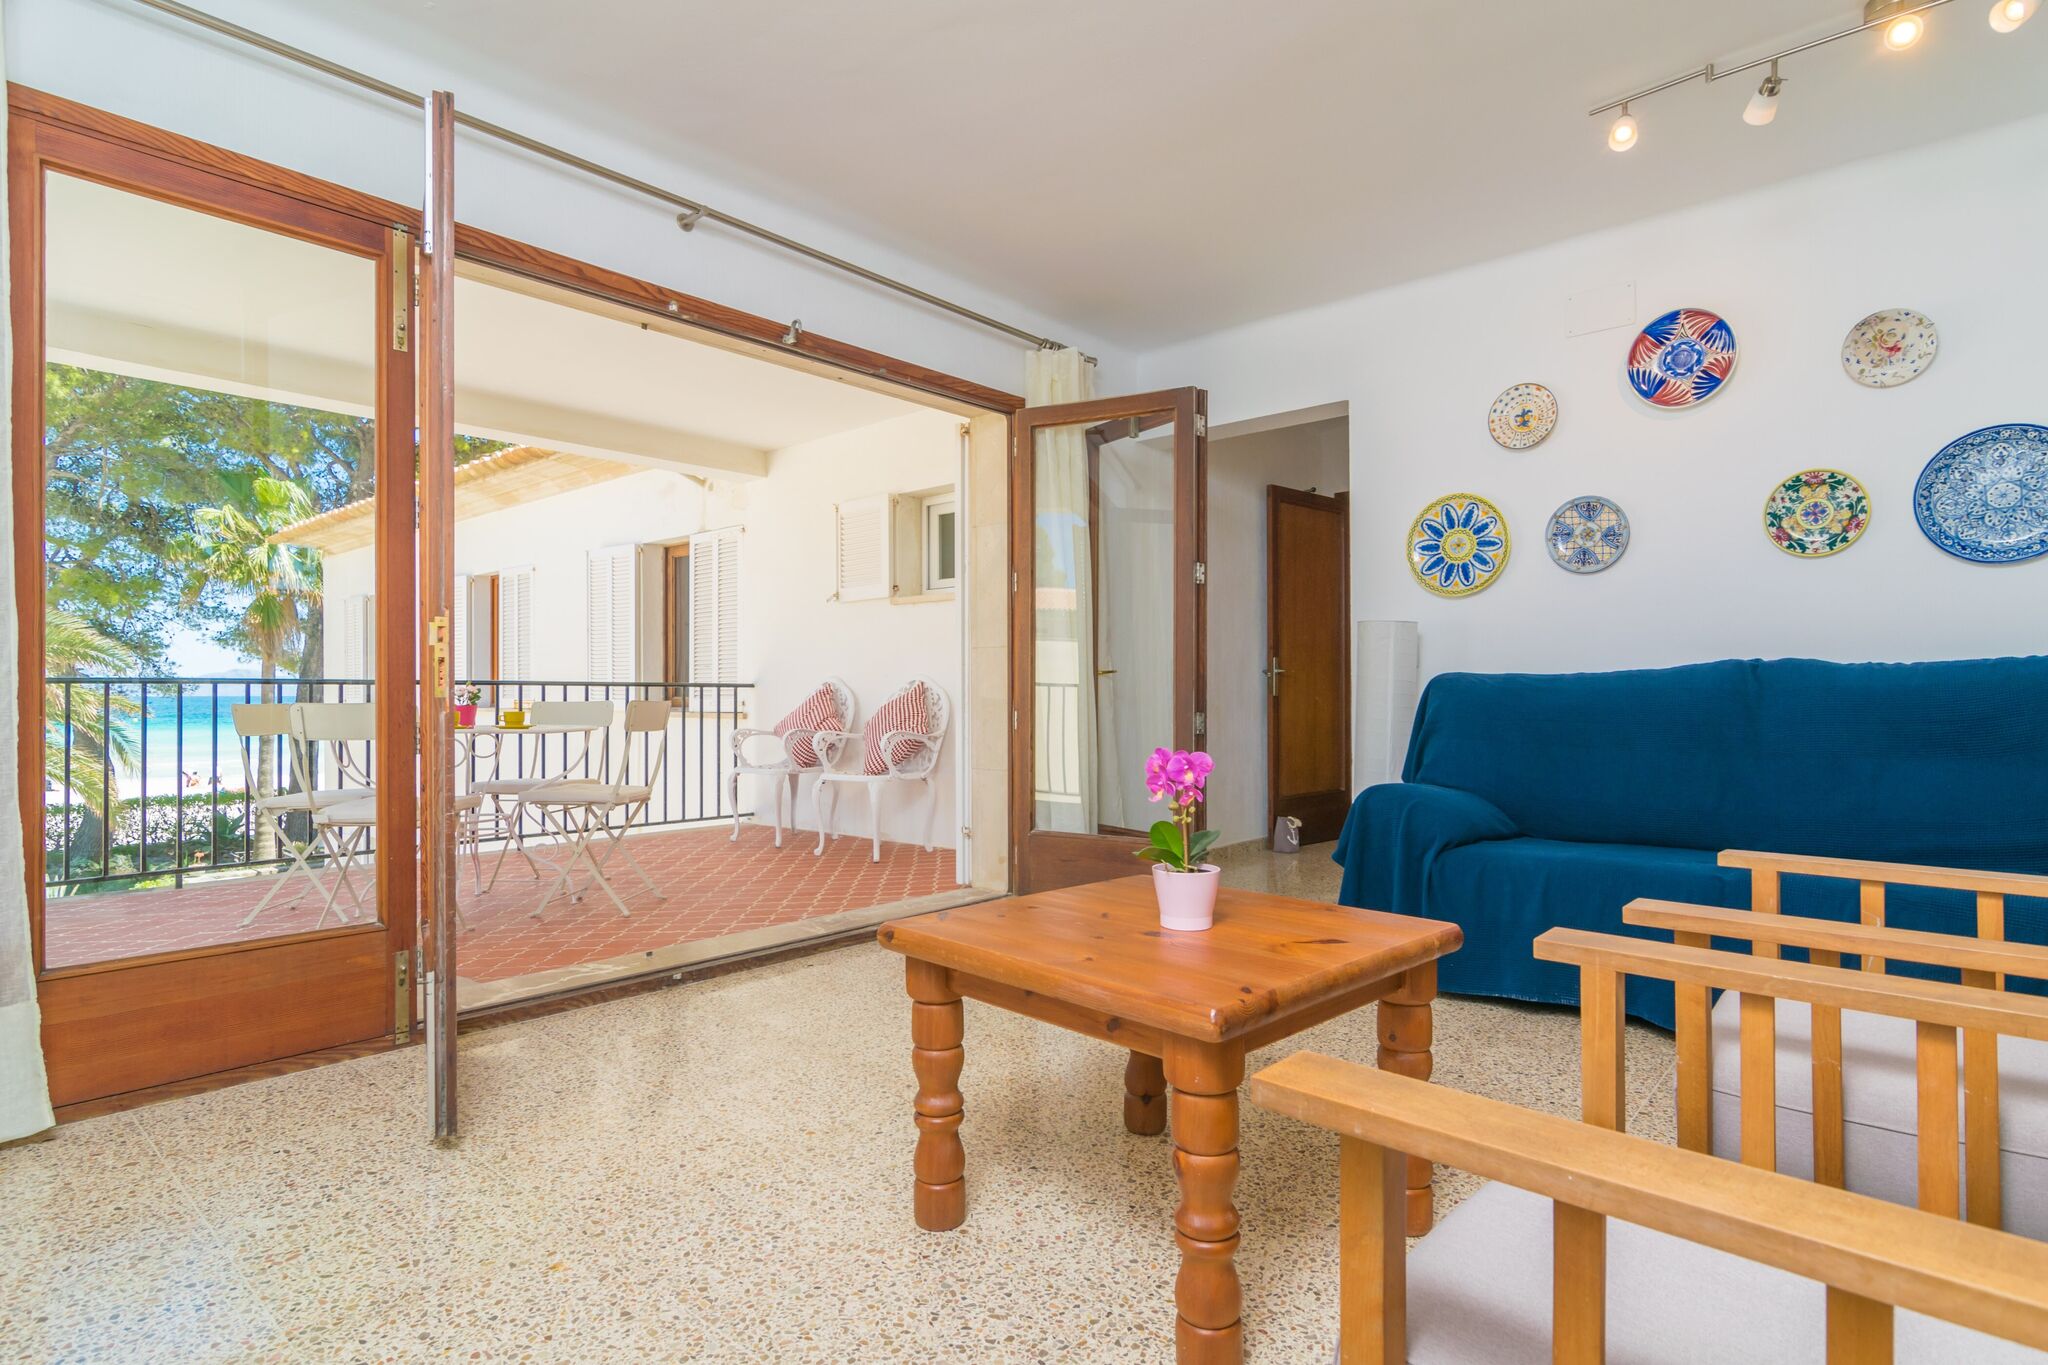 GARBALLONS - Appartement voor 6 personen in de haven van Alcudia.